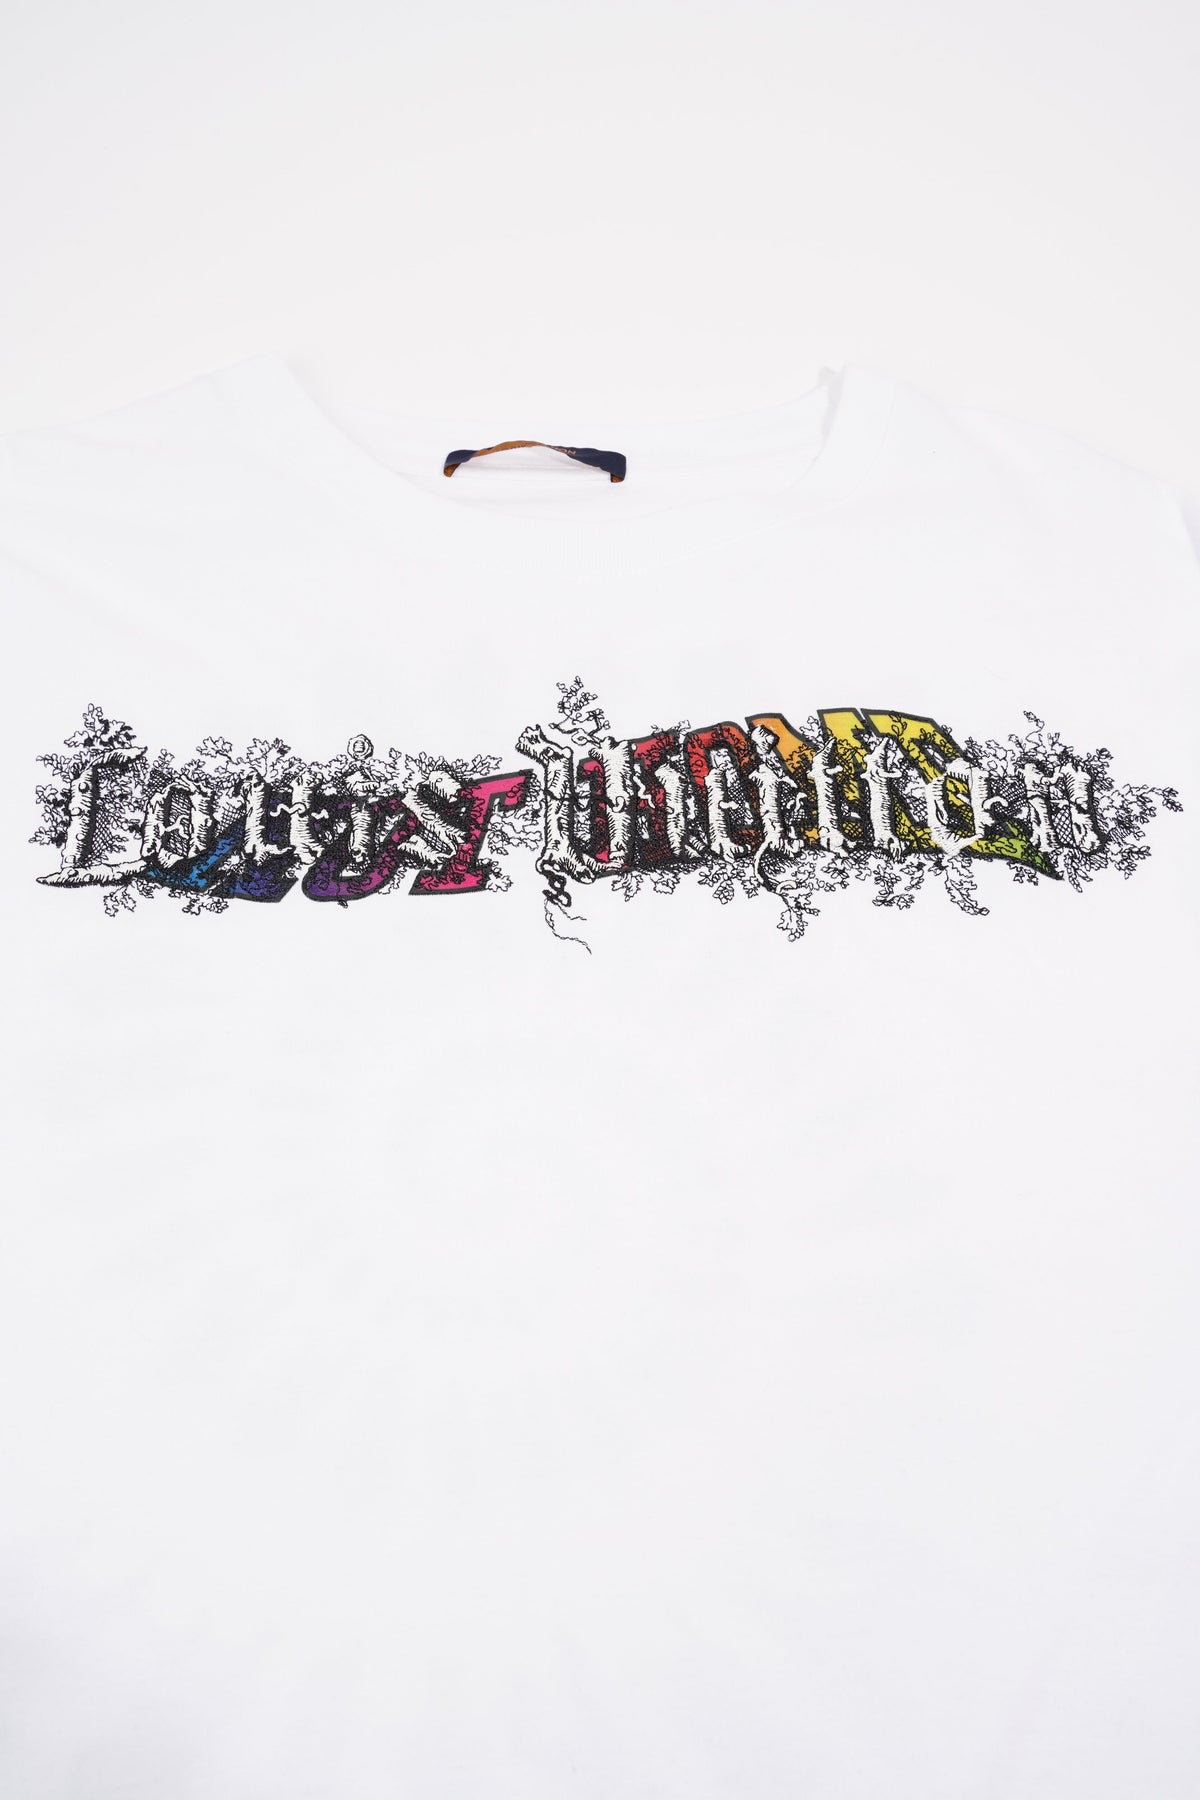 White Color Louis Vuitton Men's T-shirt